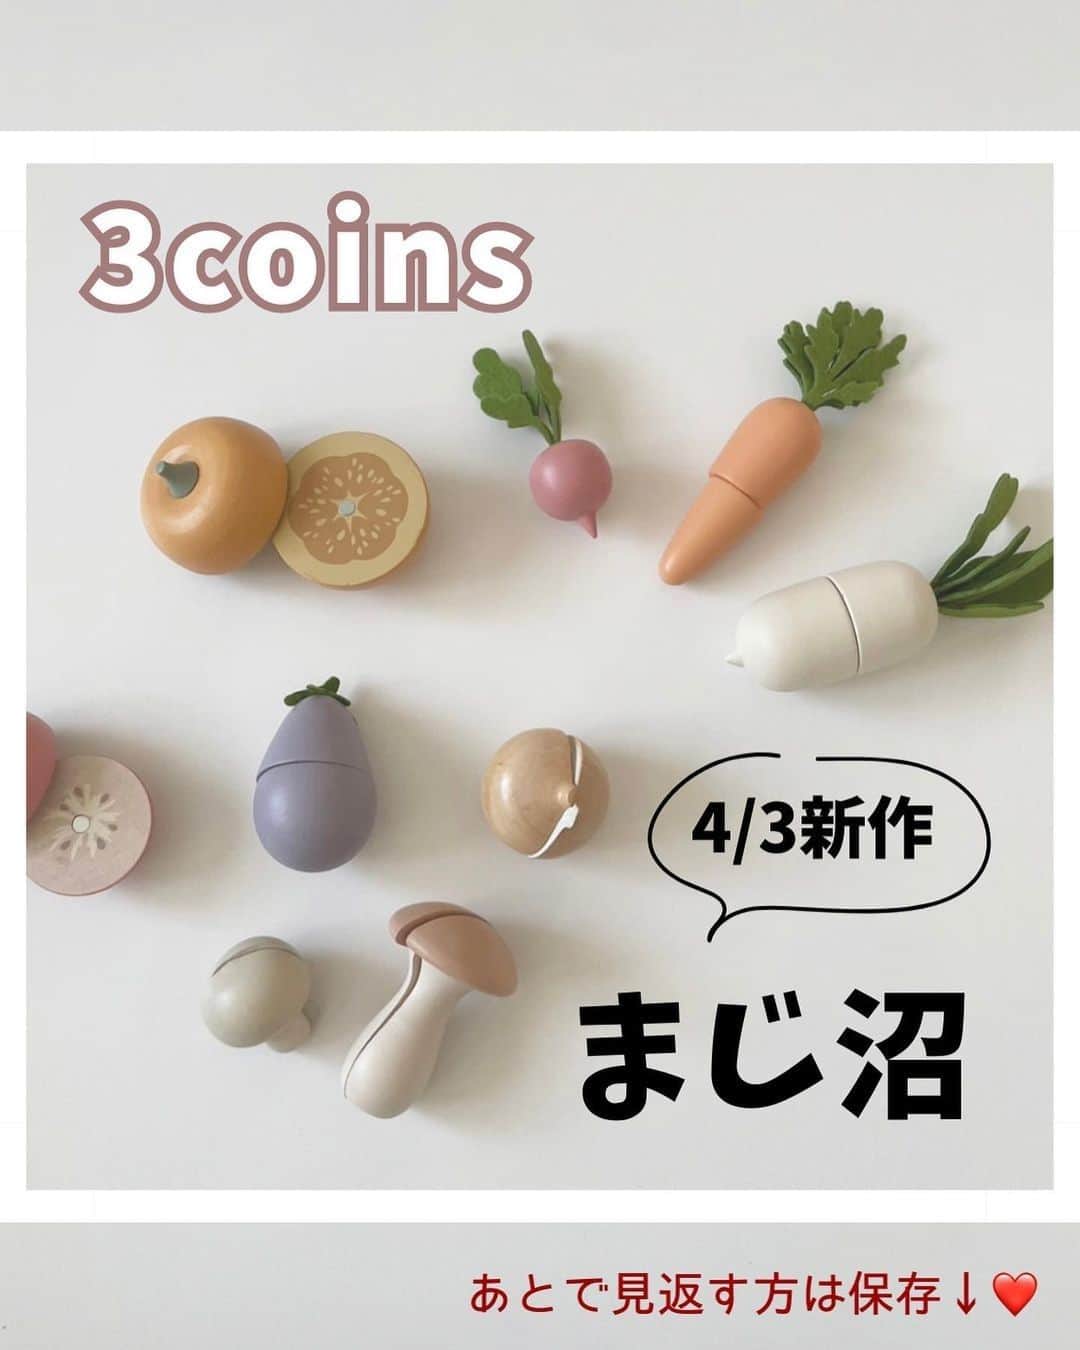 コノビーのインスタグラム：「大人気！3coinsのおもちゃ最新作が可愛すぎるっ💖　#コノビー #3coins   photo by @mochiko_benri さま 紹介させていただきありがとうございます♡  4/3新発売！木製おもちゃがおしゃれでかわいい💖 たくさん買っても3coinsの商品なので、安く収まるのが嬉しいですね！  投稿主の@mochiko_benri さんのお子さんは、おままごとが大好きで夢中で遊んでいたようです！  人気アイテムなので、店頭チェックはお早めに！  いいね💖と、あとで購入する時に見返すための保存を忘れずに！✍  #子育て #子育て日記 #子育て記録 #子育てママ #新米ママ #プレママ #育児ママ #育児記録 #育児日記 #育児アカウント #育児あるある #赤ちゃんのいる生活 #楽しい子育て #ライフスタイル #暮らしのアイデア #生活の知恵 #3coins購入品 #3coinsおもちゃ #木製おもちゃ #かわいいおもちゃ #おままごと #おままごとグッズ #おしゃれなおもちゃ #オシャレなおもちゃ」